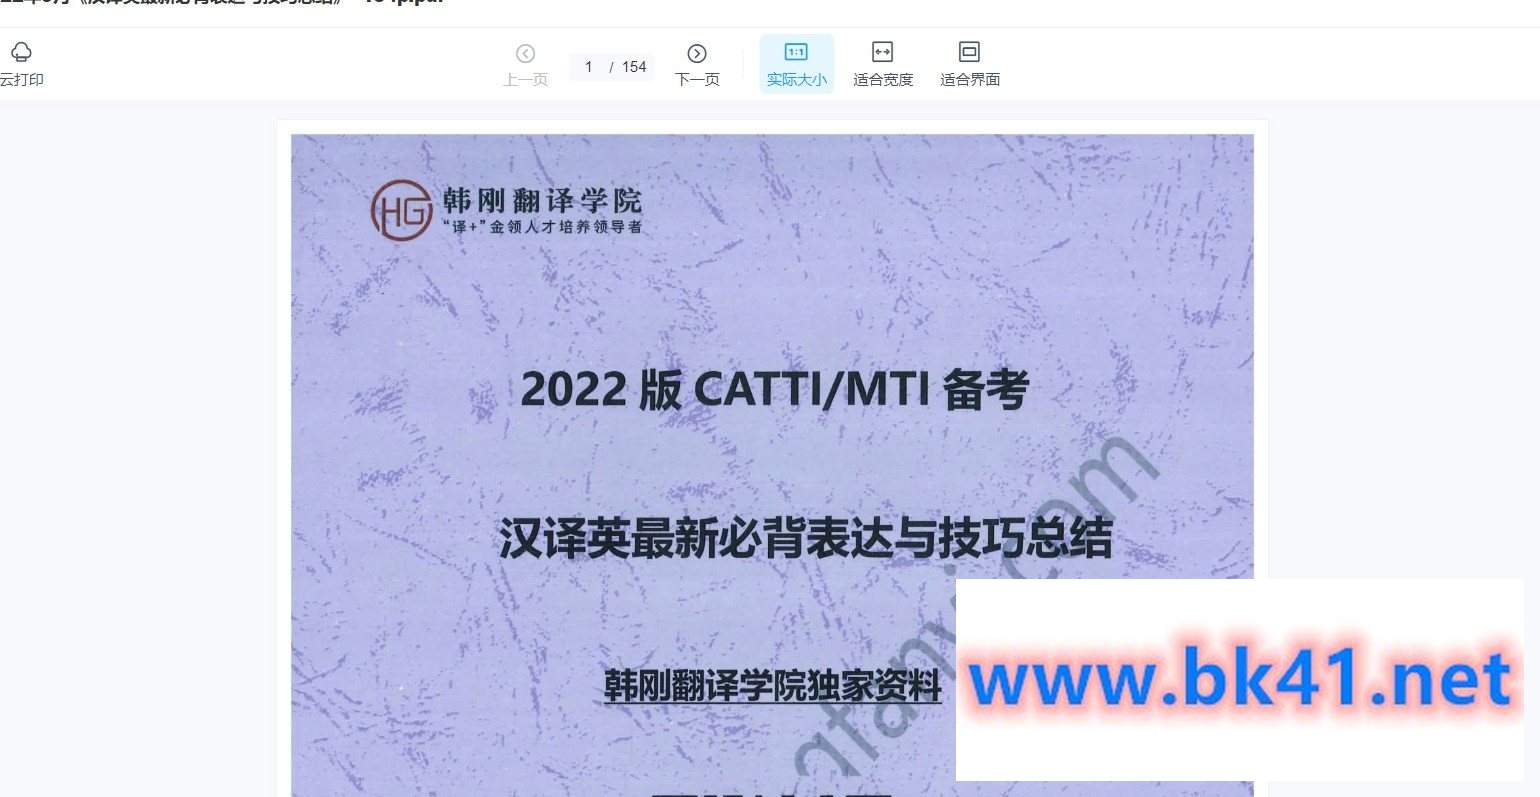 【韩刚翻译学院】2022版CATTI MTI备考 韩刚2022年9月《最新汉英必备表达》+音频讲解ing-不可思议资源网